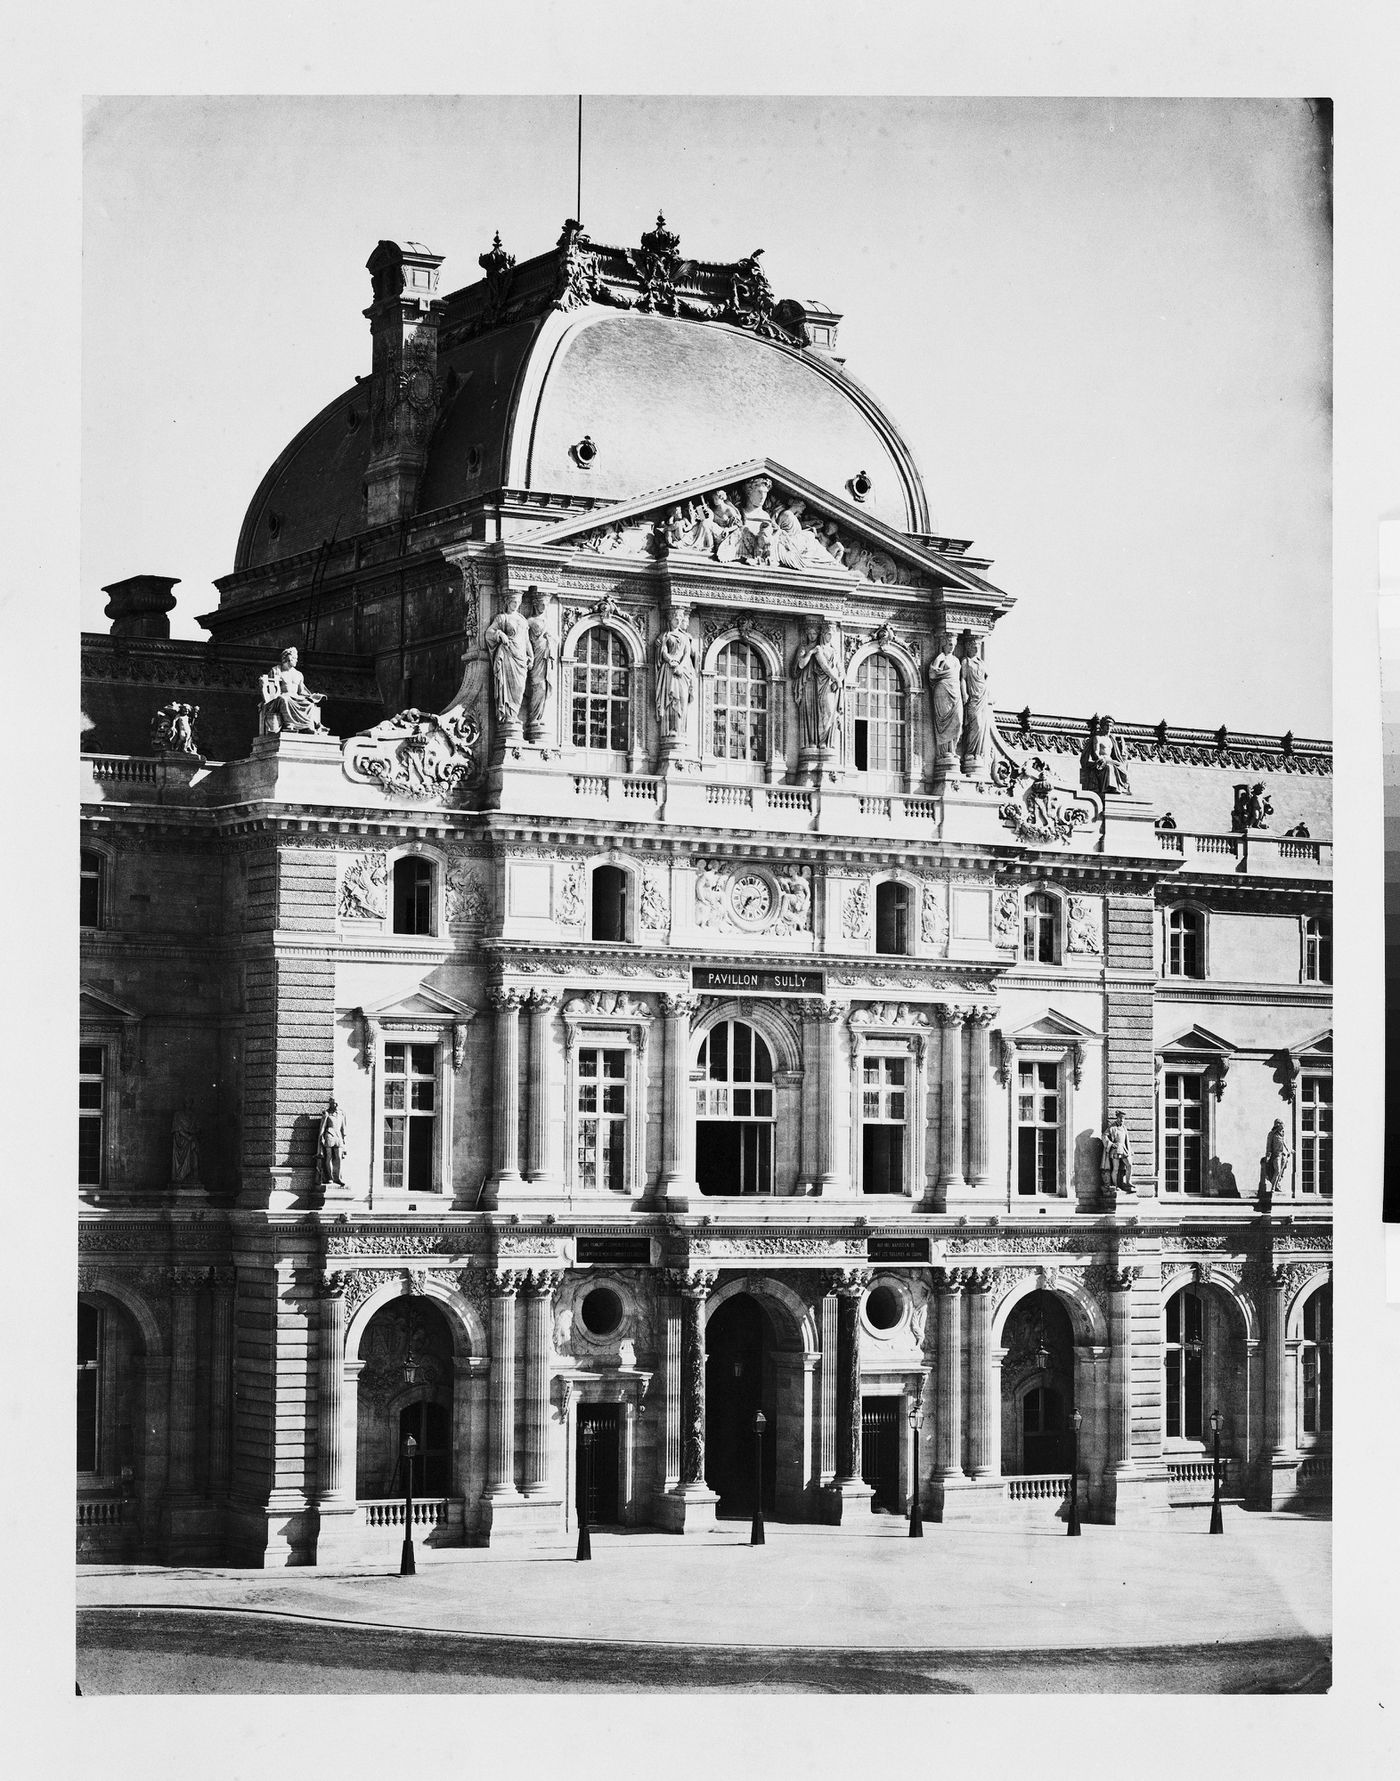 View of façade of Pavillon Sully, Nouveau Louvre, Paris, France